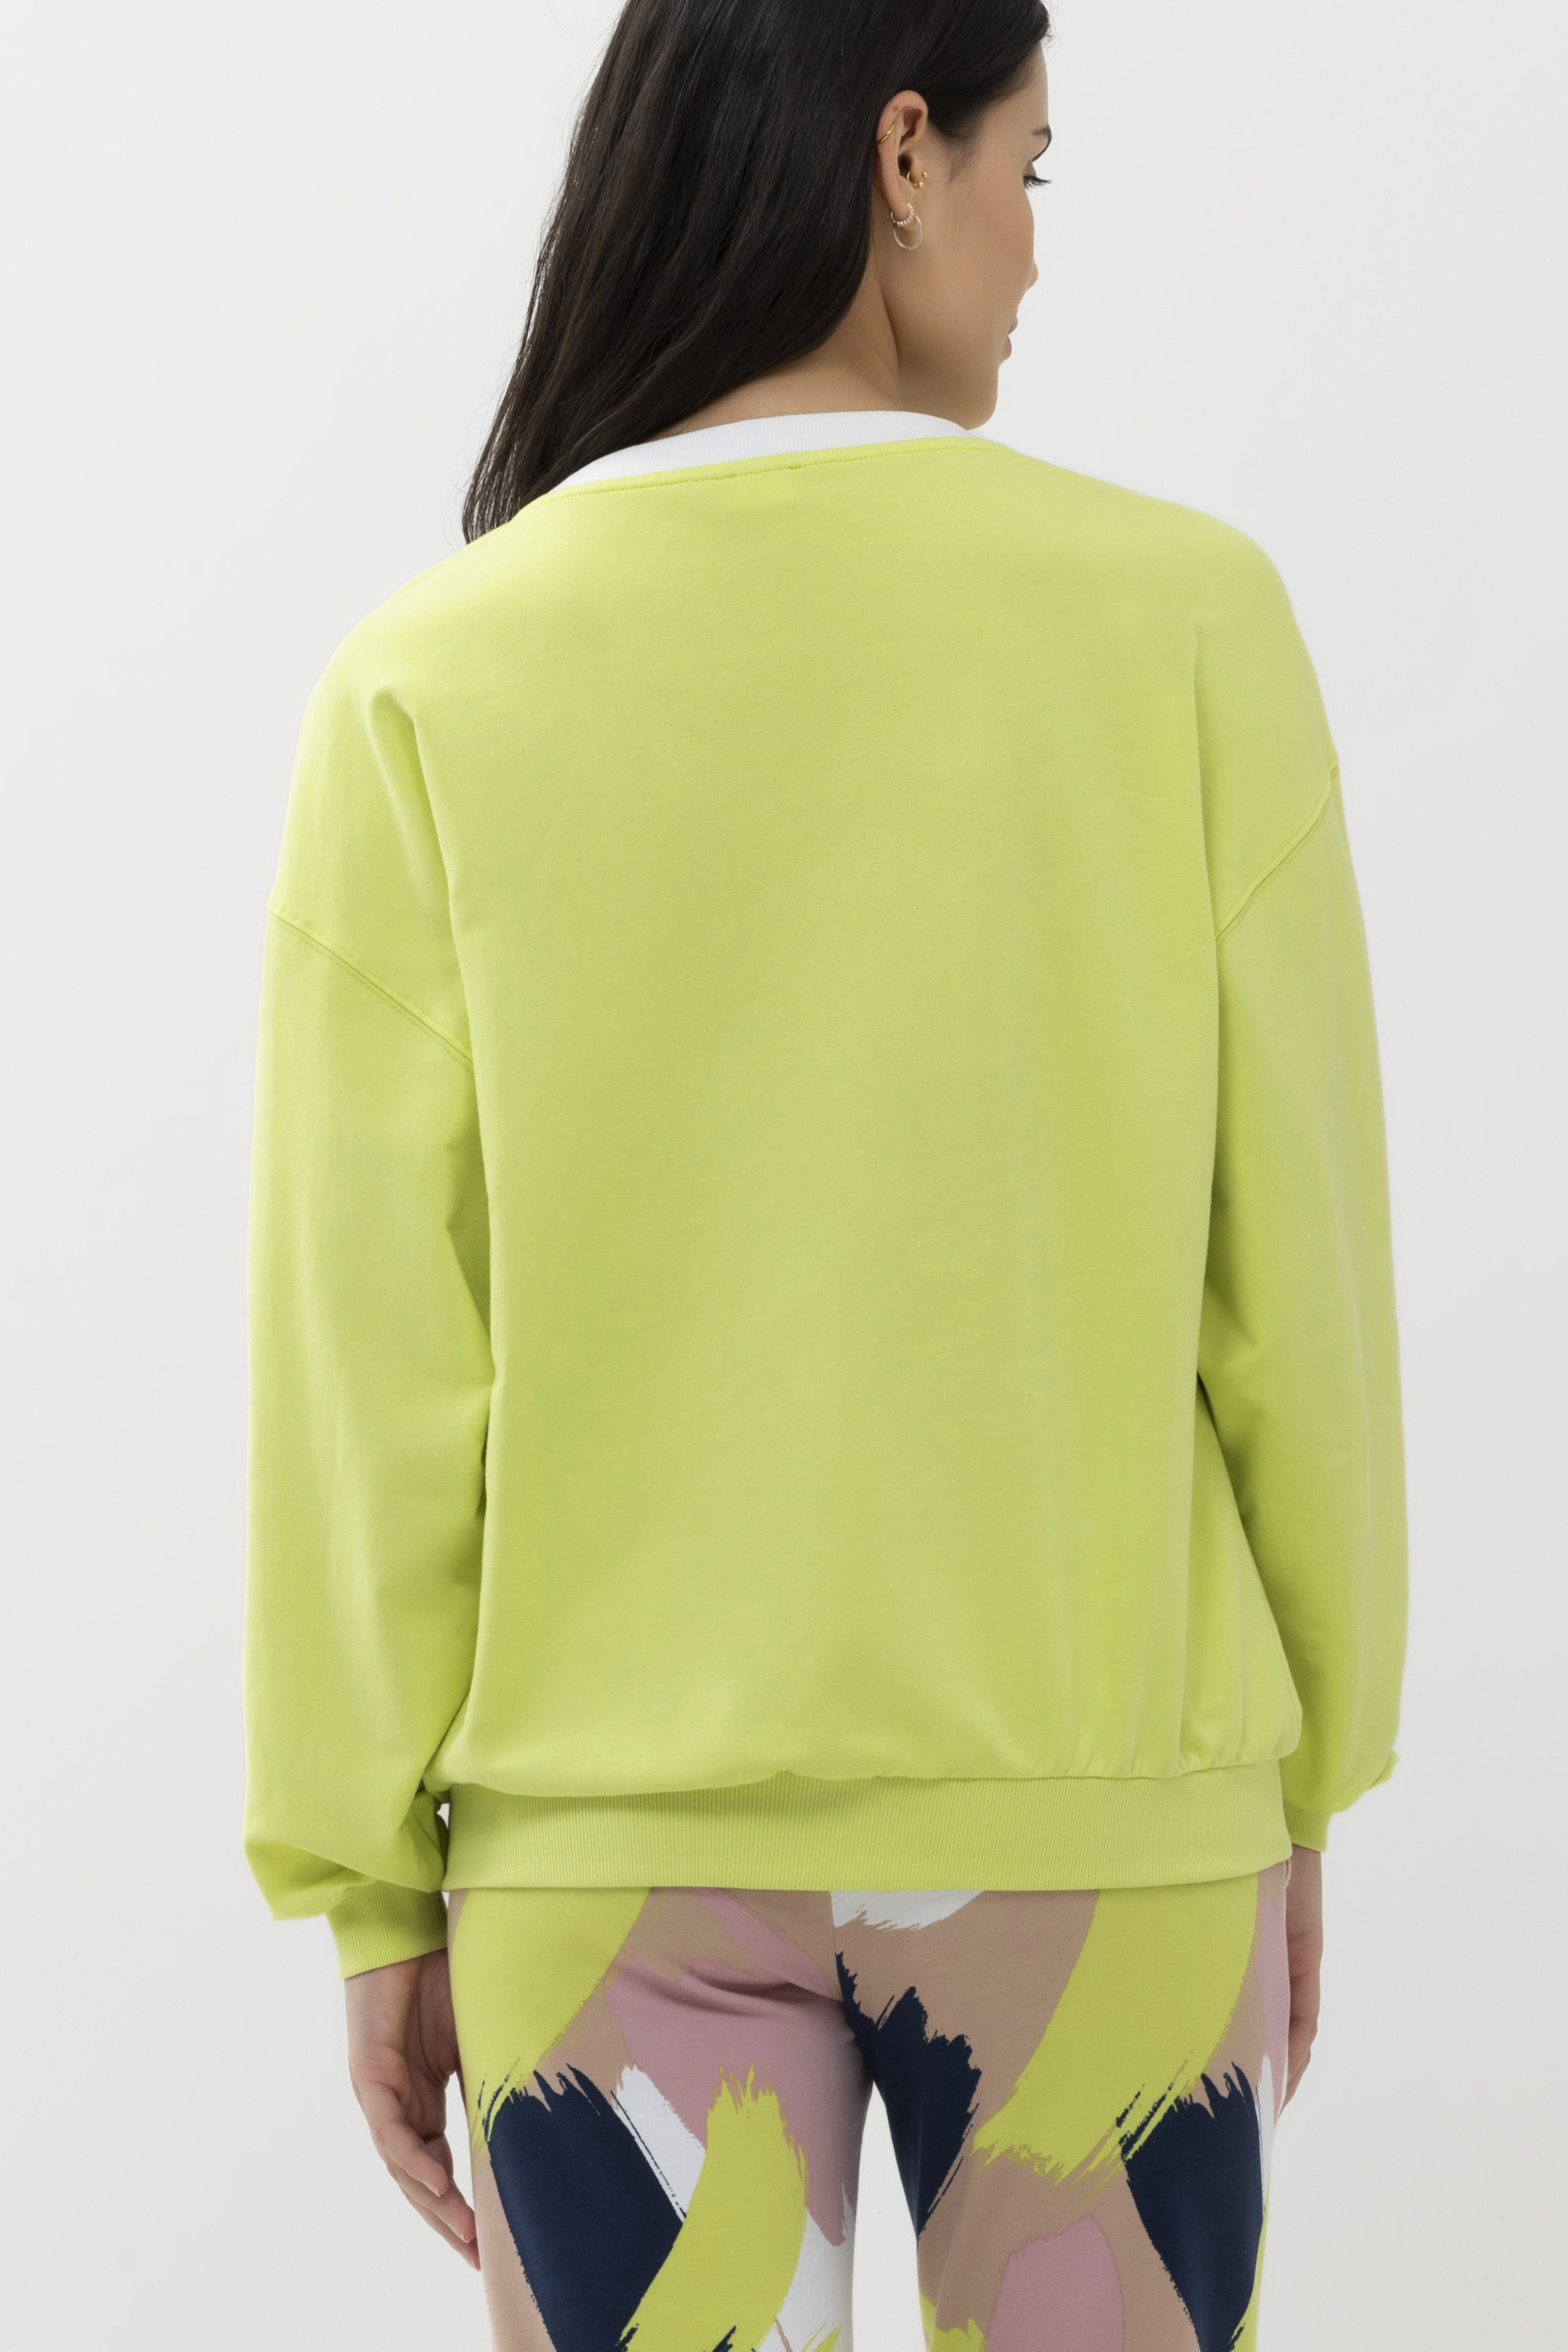 Sweater Serie Kristy Rear View | mey®